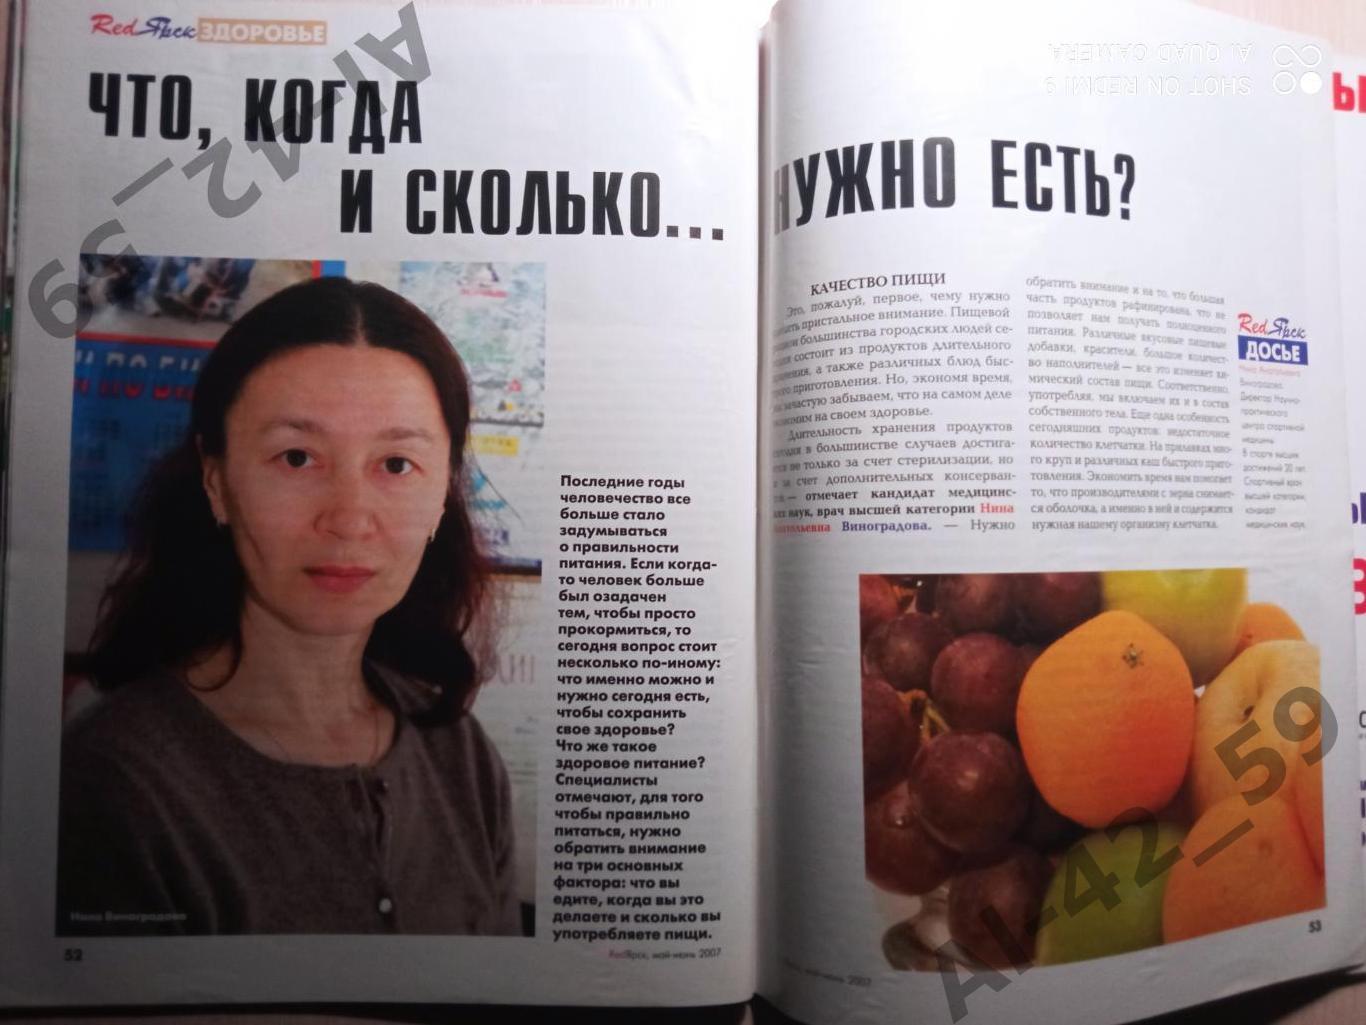 Журнал Redярск N4 (май-июнь 2007 ). 7